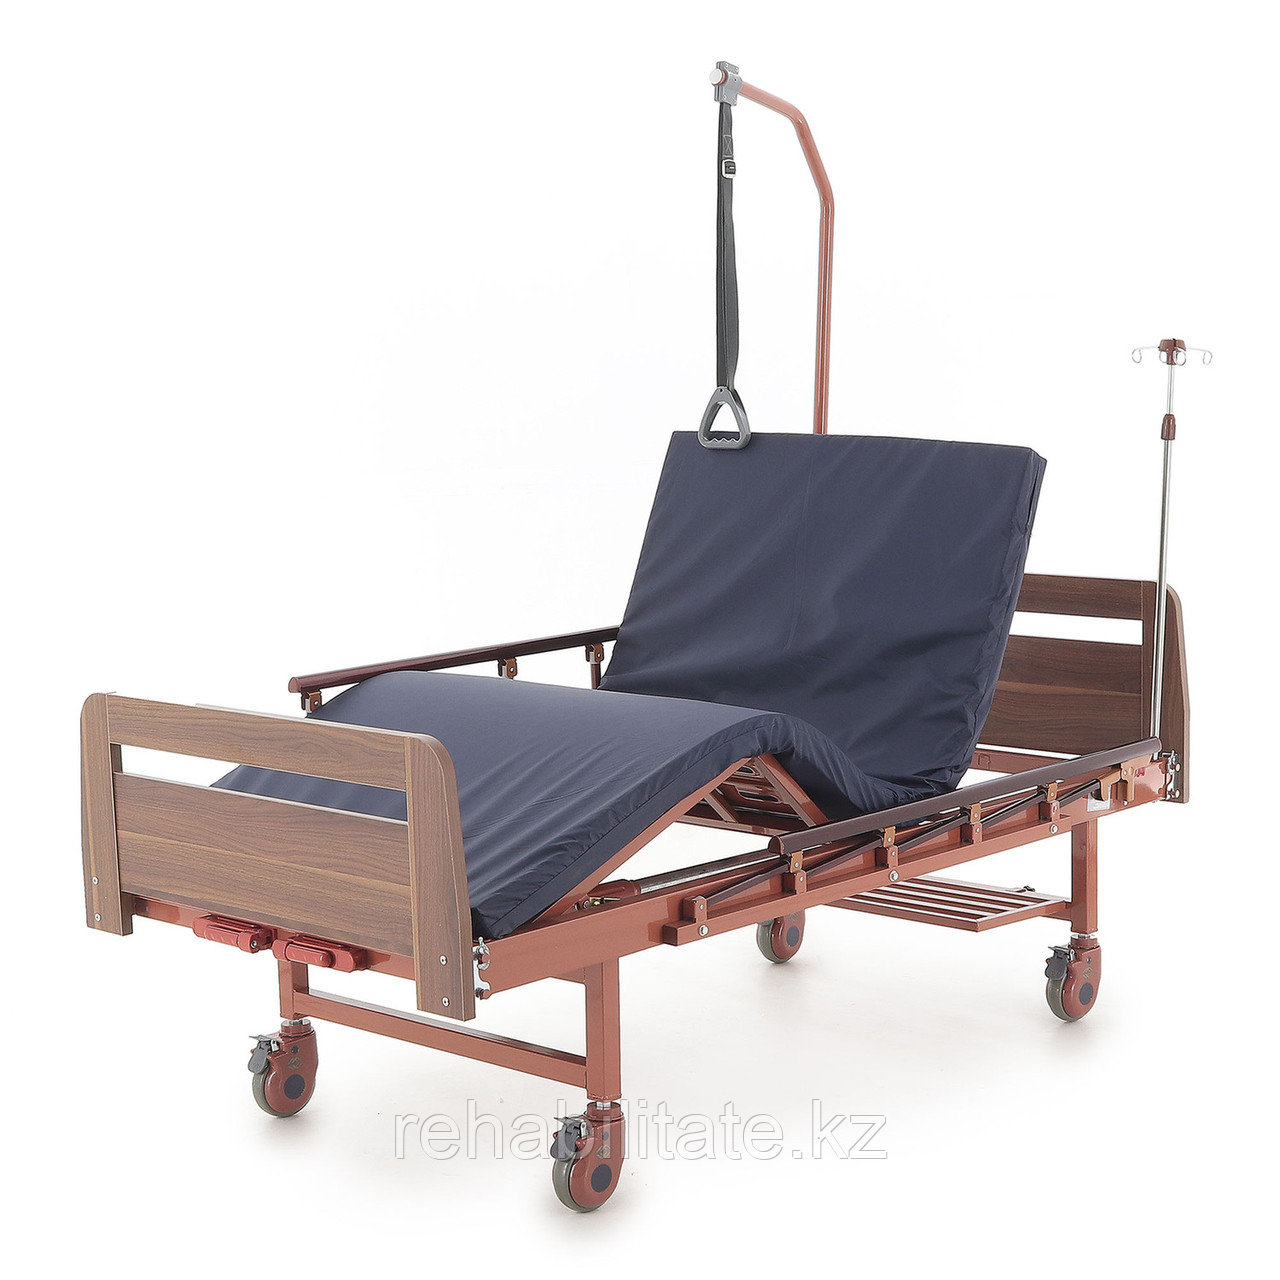 Четырехсекционная медицинская кровать для лежачих больных деревянная Е-8, фото 1